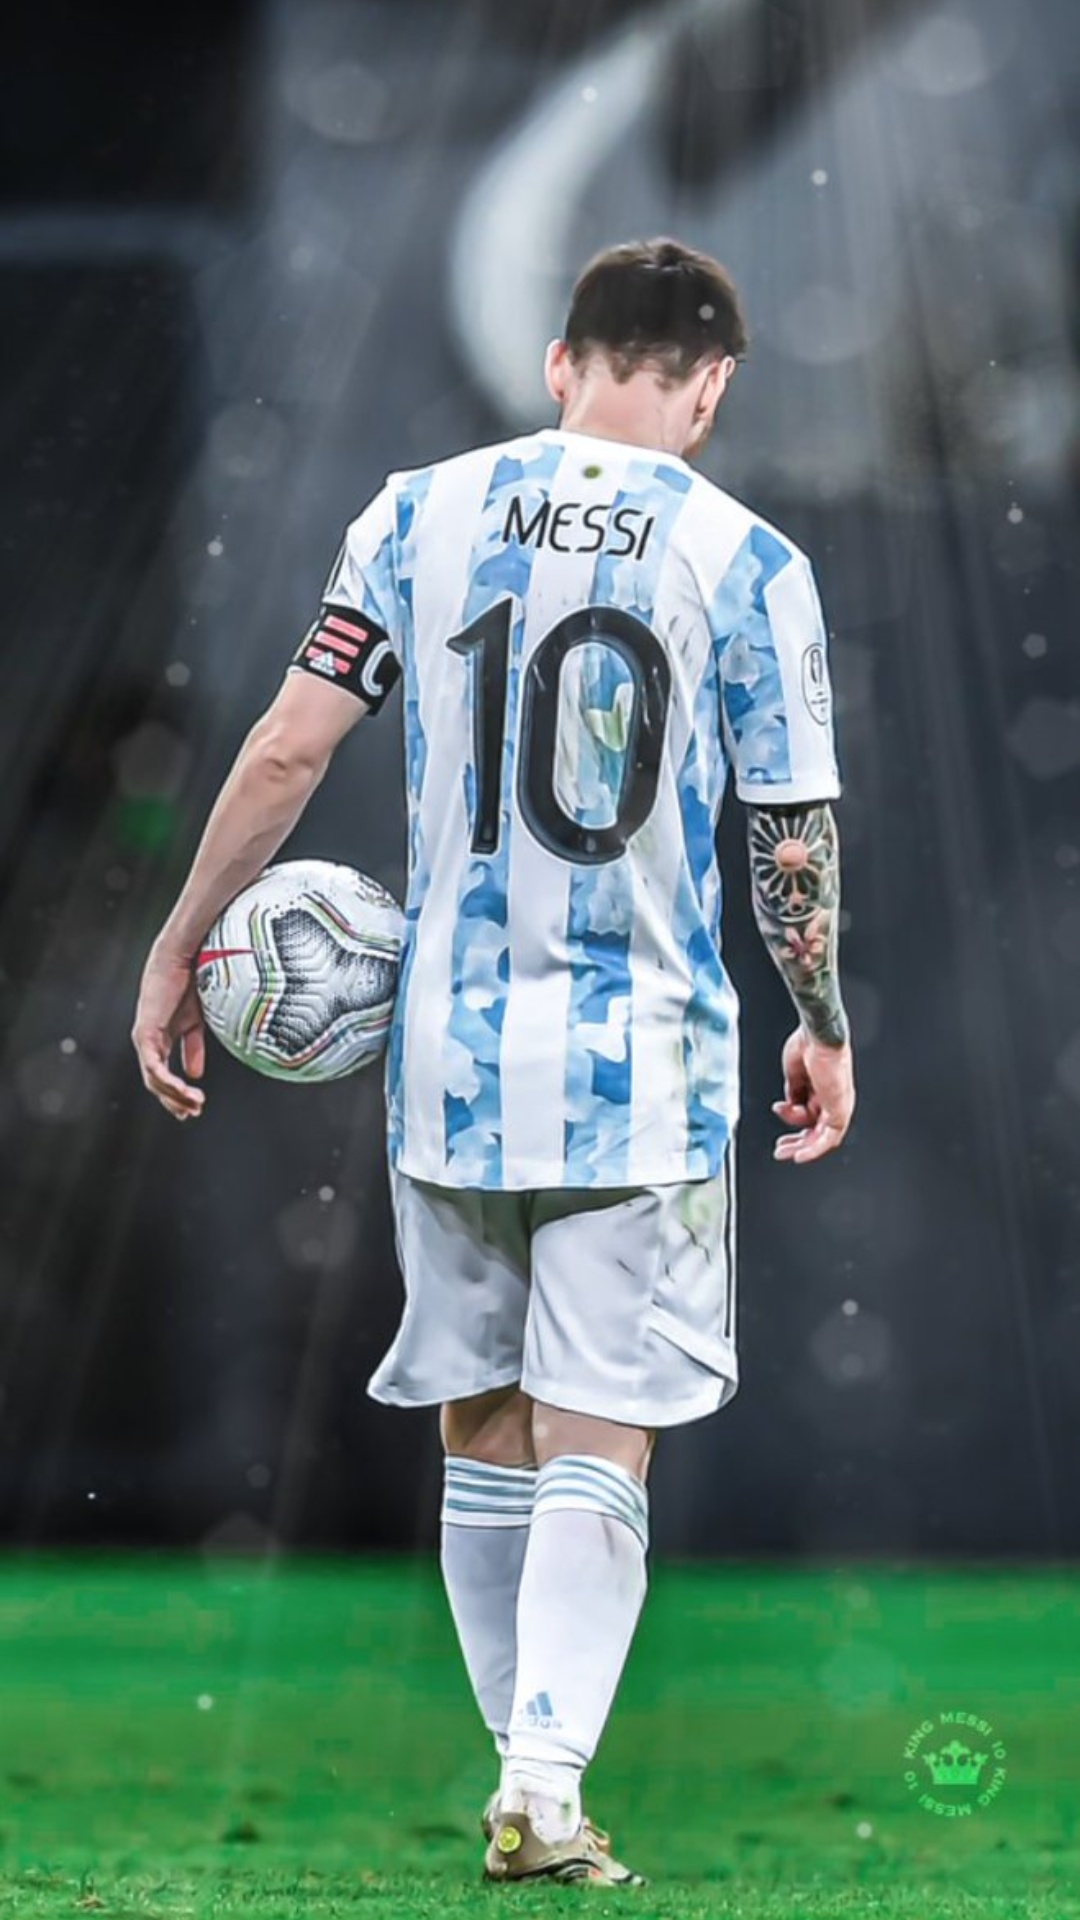 Bộ ảnh nền điện thoại World Cup của Messi chắc chắn sẽ làm các fan của anh chết mê chết mệt. Tải xuống những thiết kế độc đáo này và tạo nên phong cách độc đáo cho điện thoại của bạn. Messi là một cầu thủ tuyệt vời ở World Cup và bạn có thể tự hào để sở hữu những hình nền này.